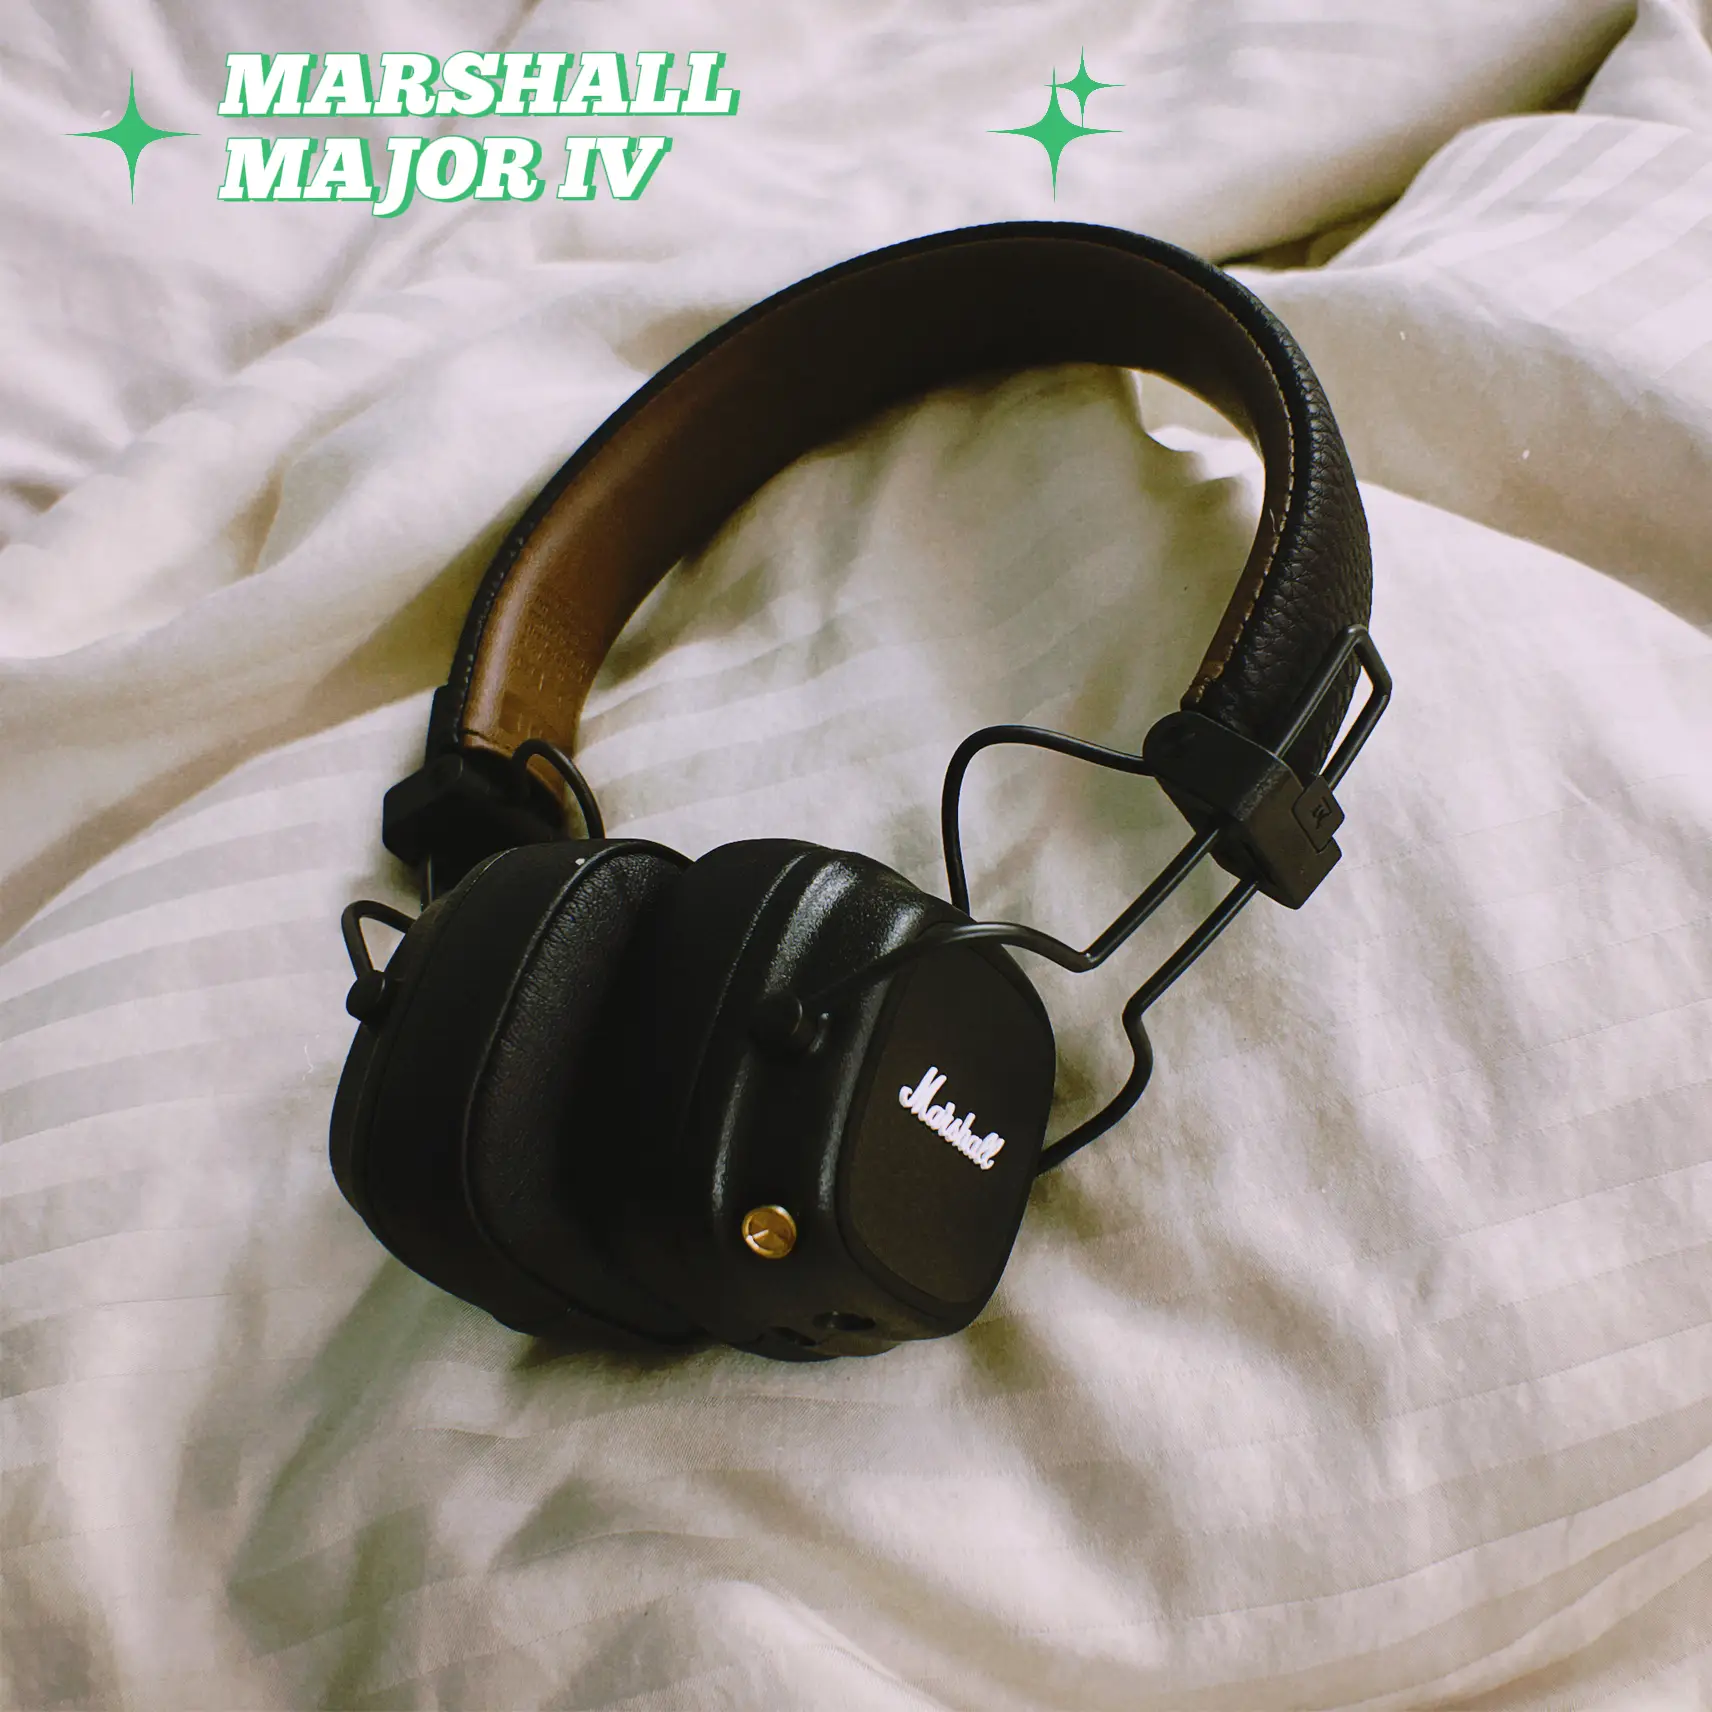 Marshall Headphones  Retro headphone, Headphones, Marshall headphones